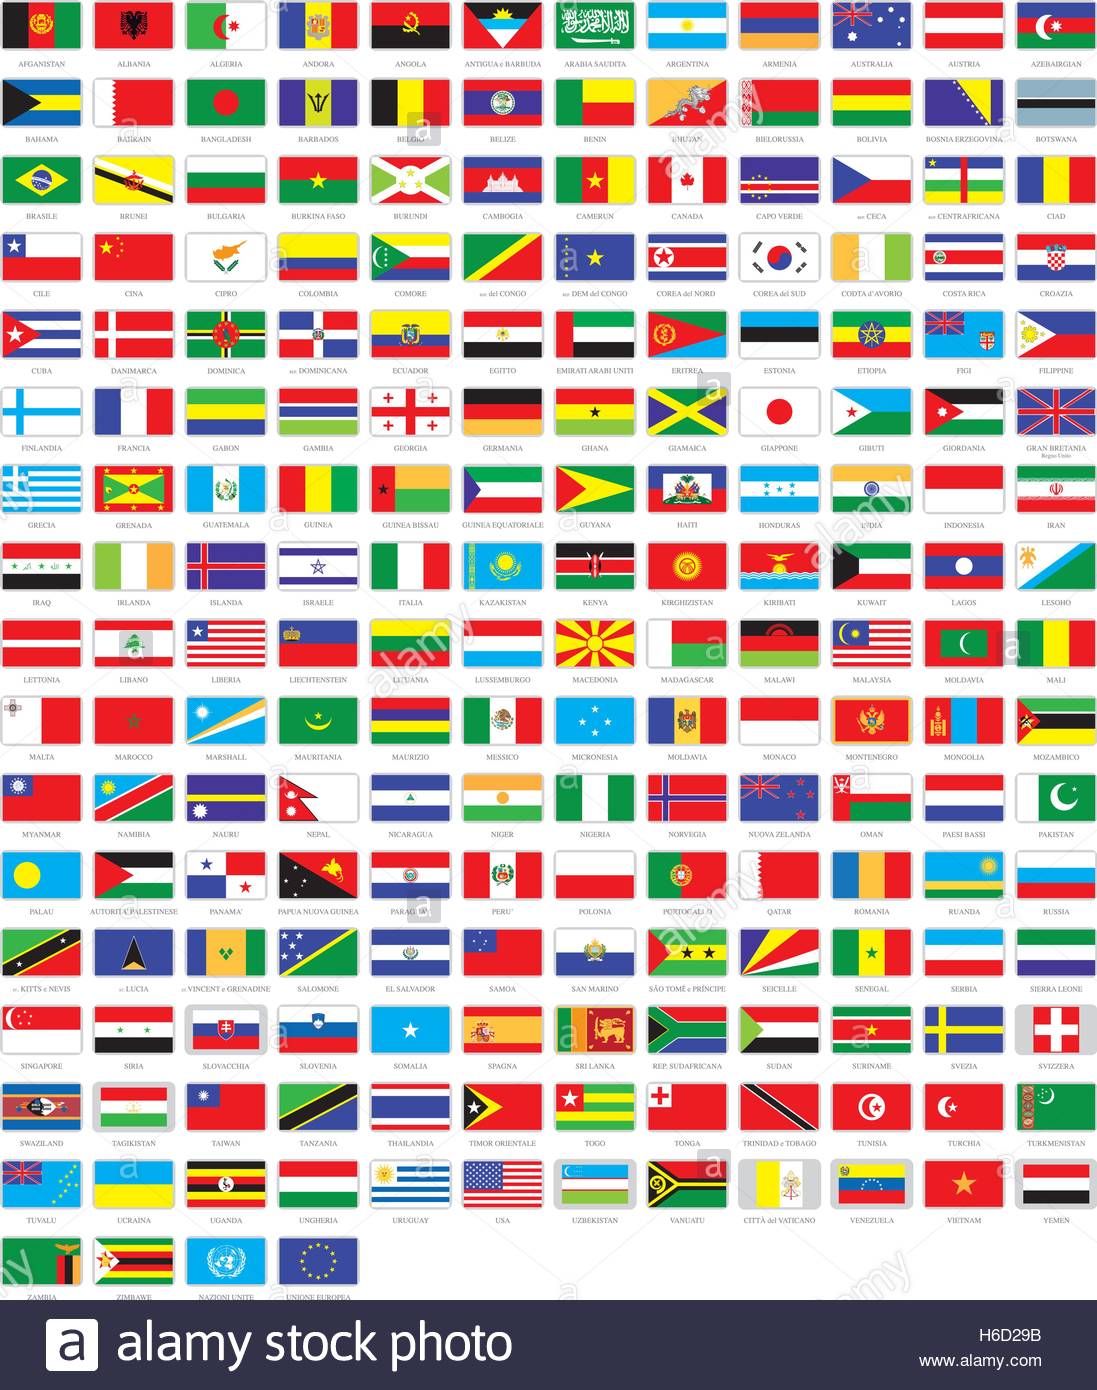 Флаги мира с названиями стран на русском